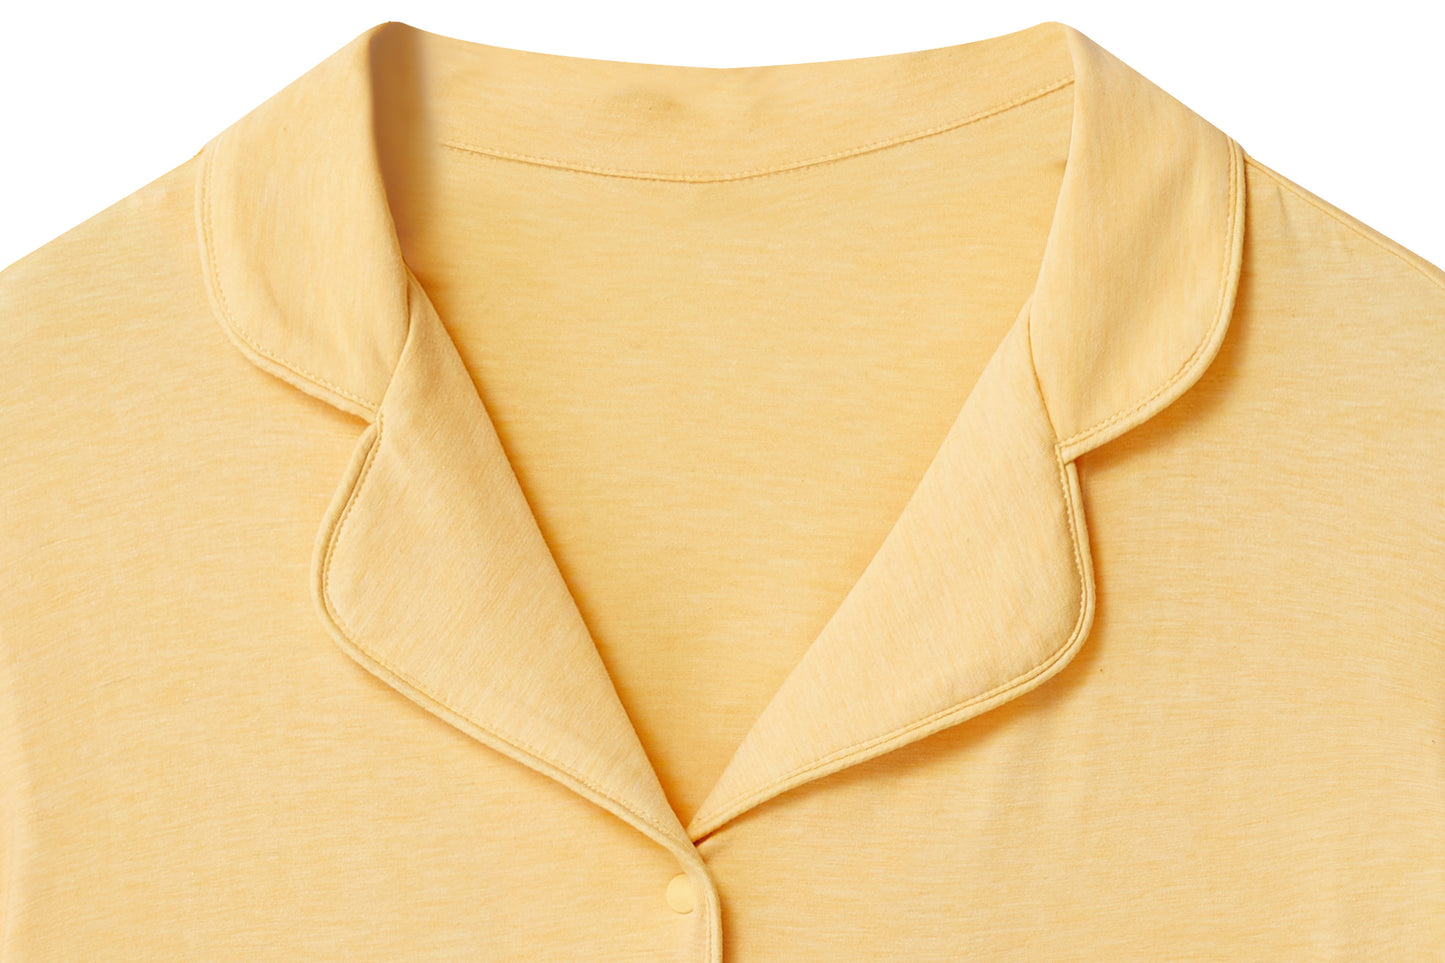 Women's Short Sleeve Button-Up Shirt (Bamboo Jersey) - Pantone Sunset Gold